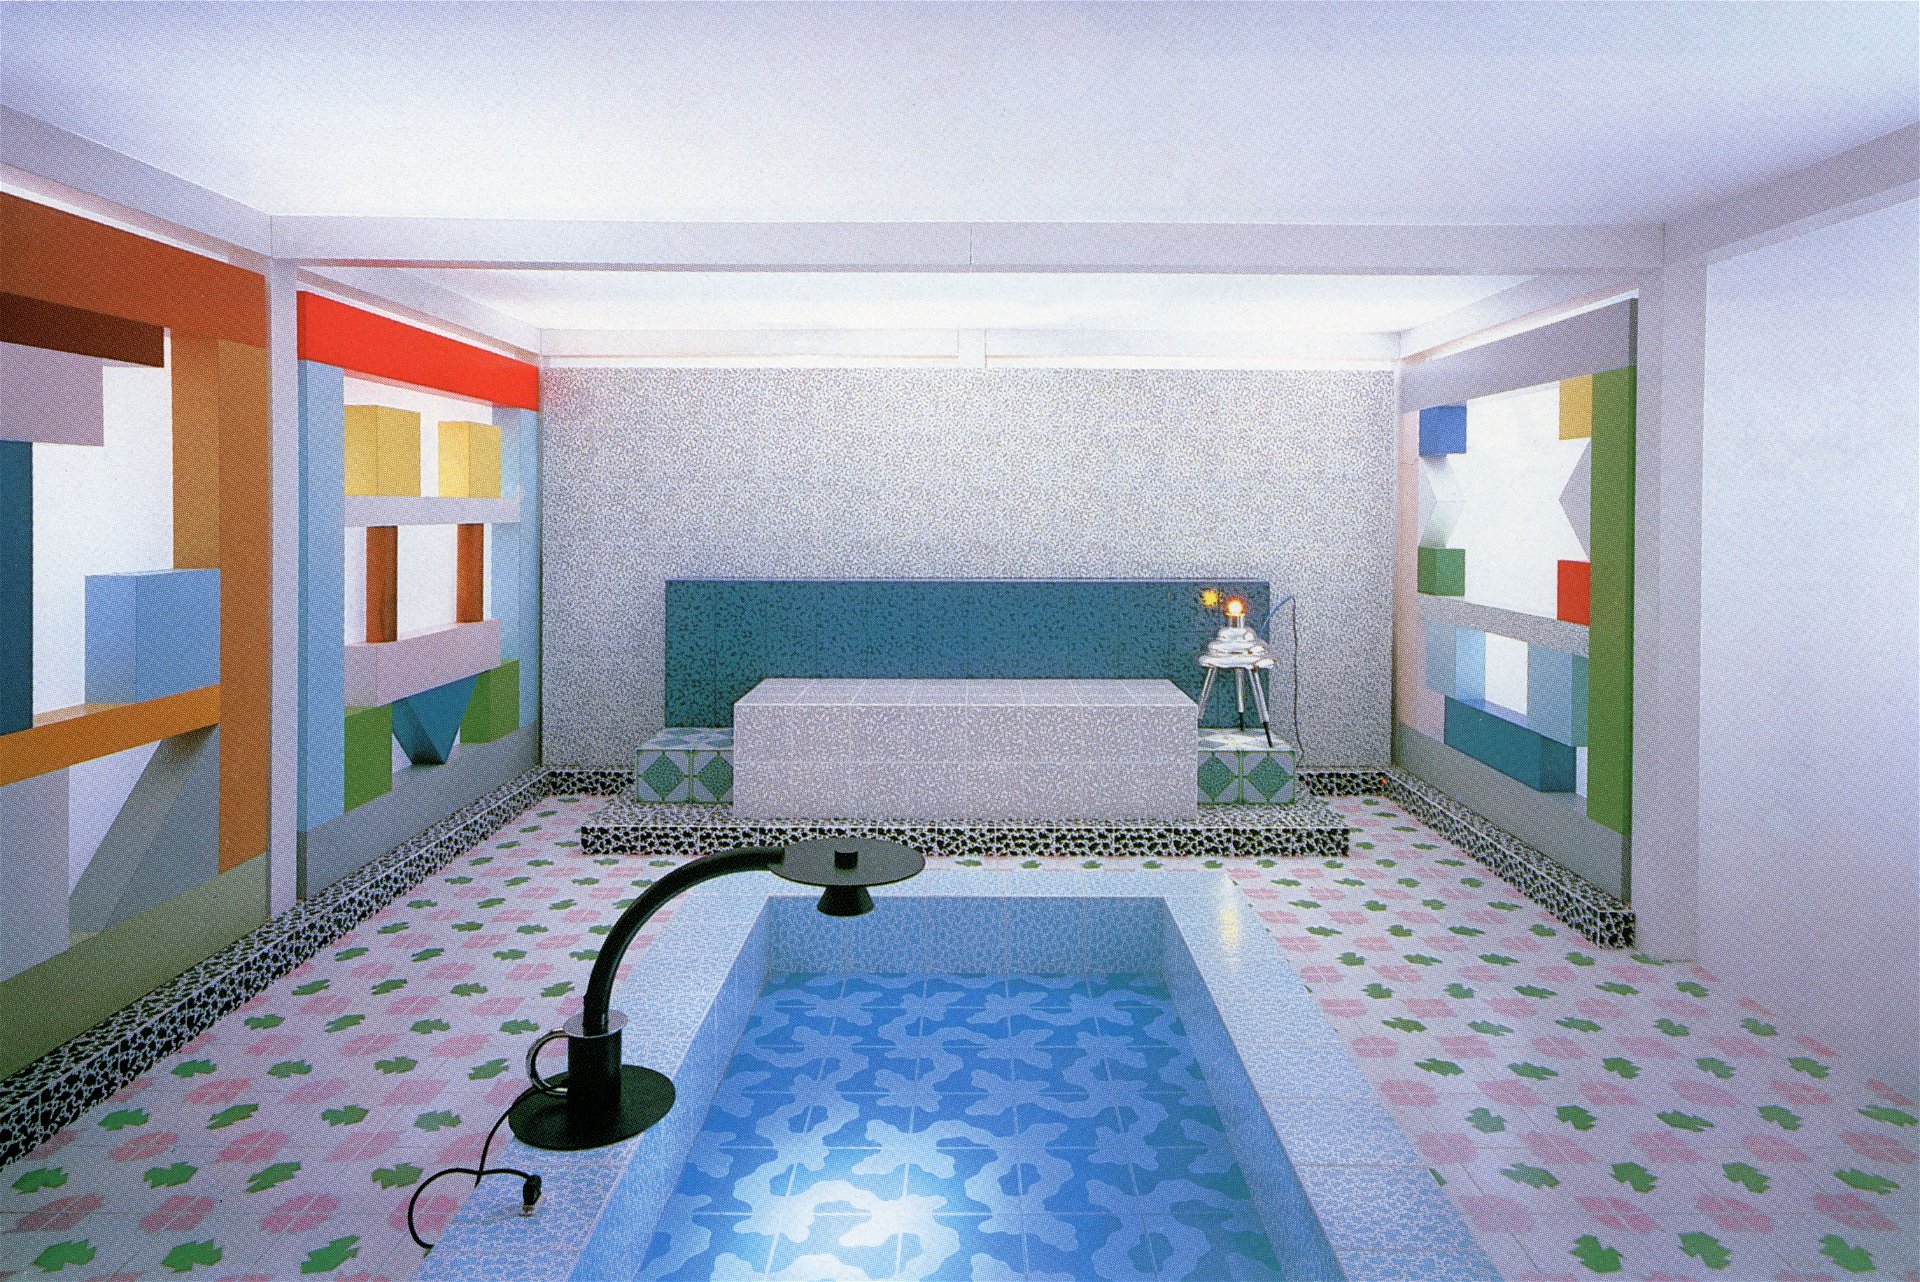 Sottsass Associati, Interieur für eine Ausstellung über italienisches Design in Tokyo, 1984